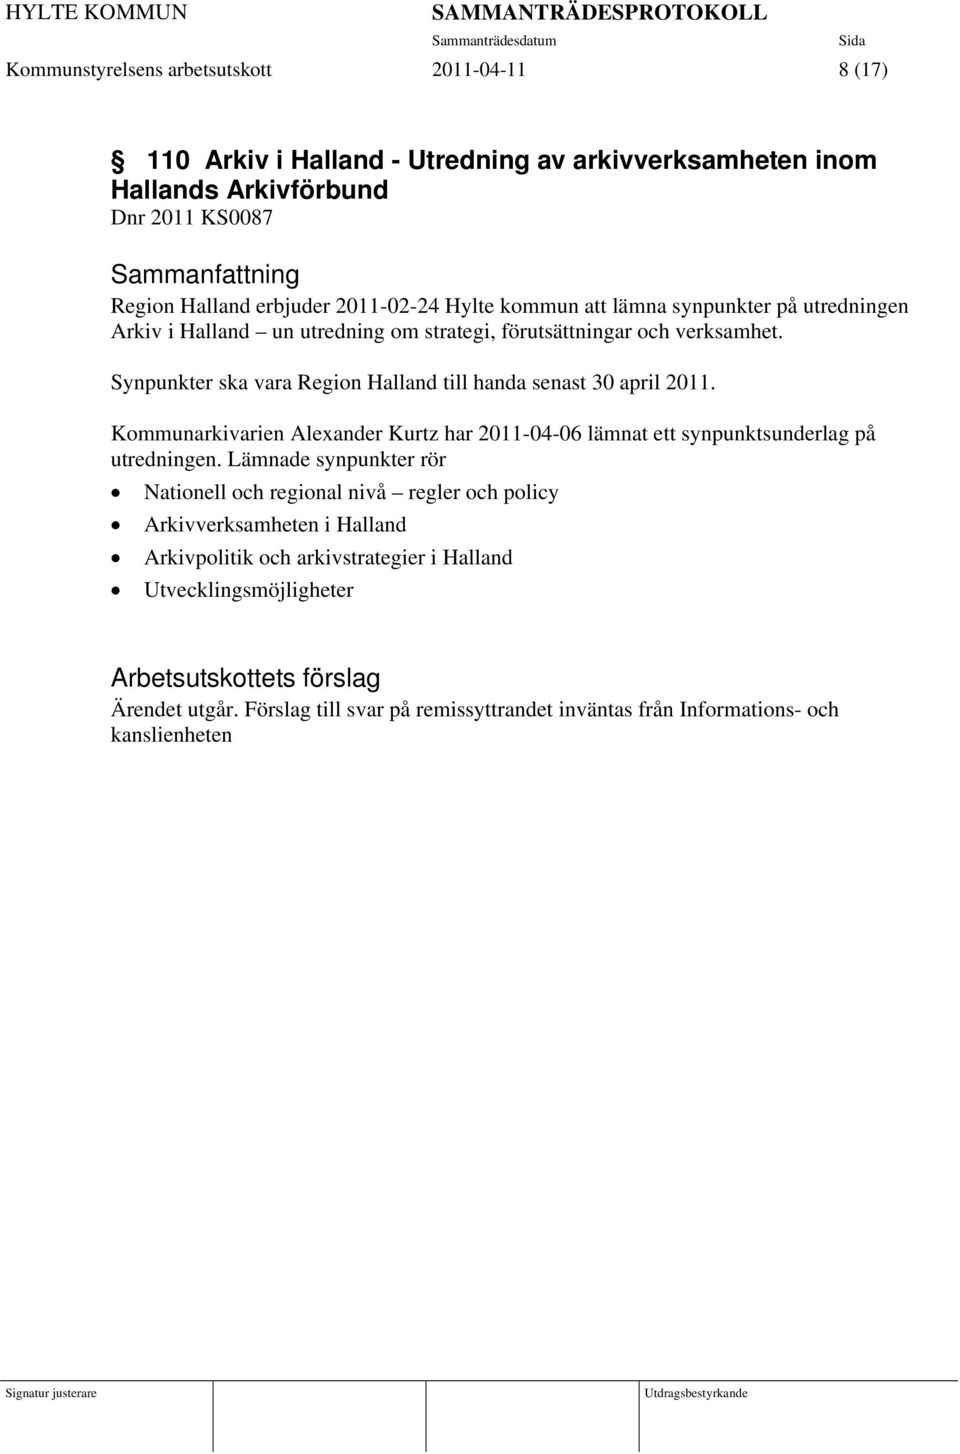 Synpunkter ska vara Region Halland till handa senast 30 april 2011. Kommunarkivarien Alexander Kurtz har 2011-04-06 lämnat ett synpunktsunderlag på utredningen.